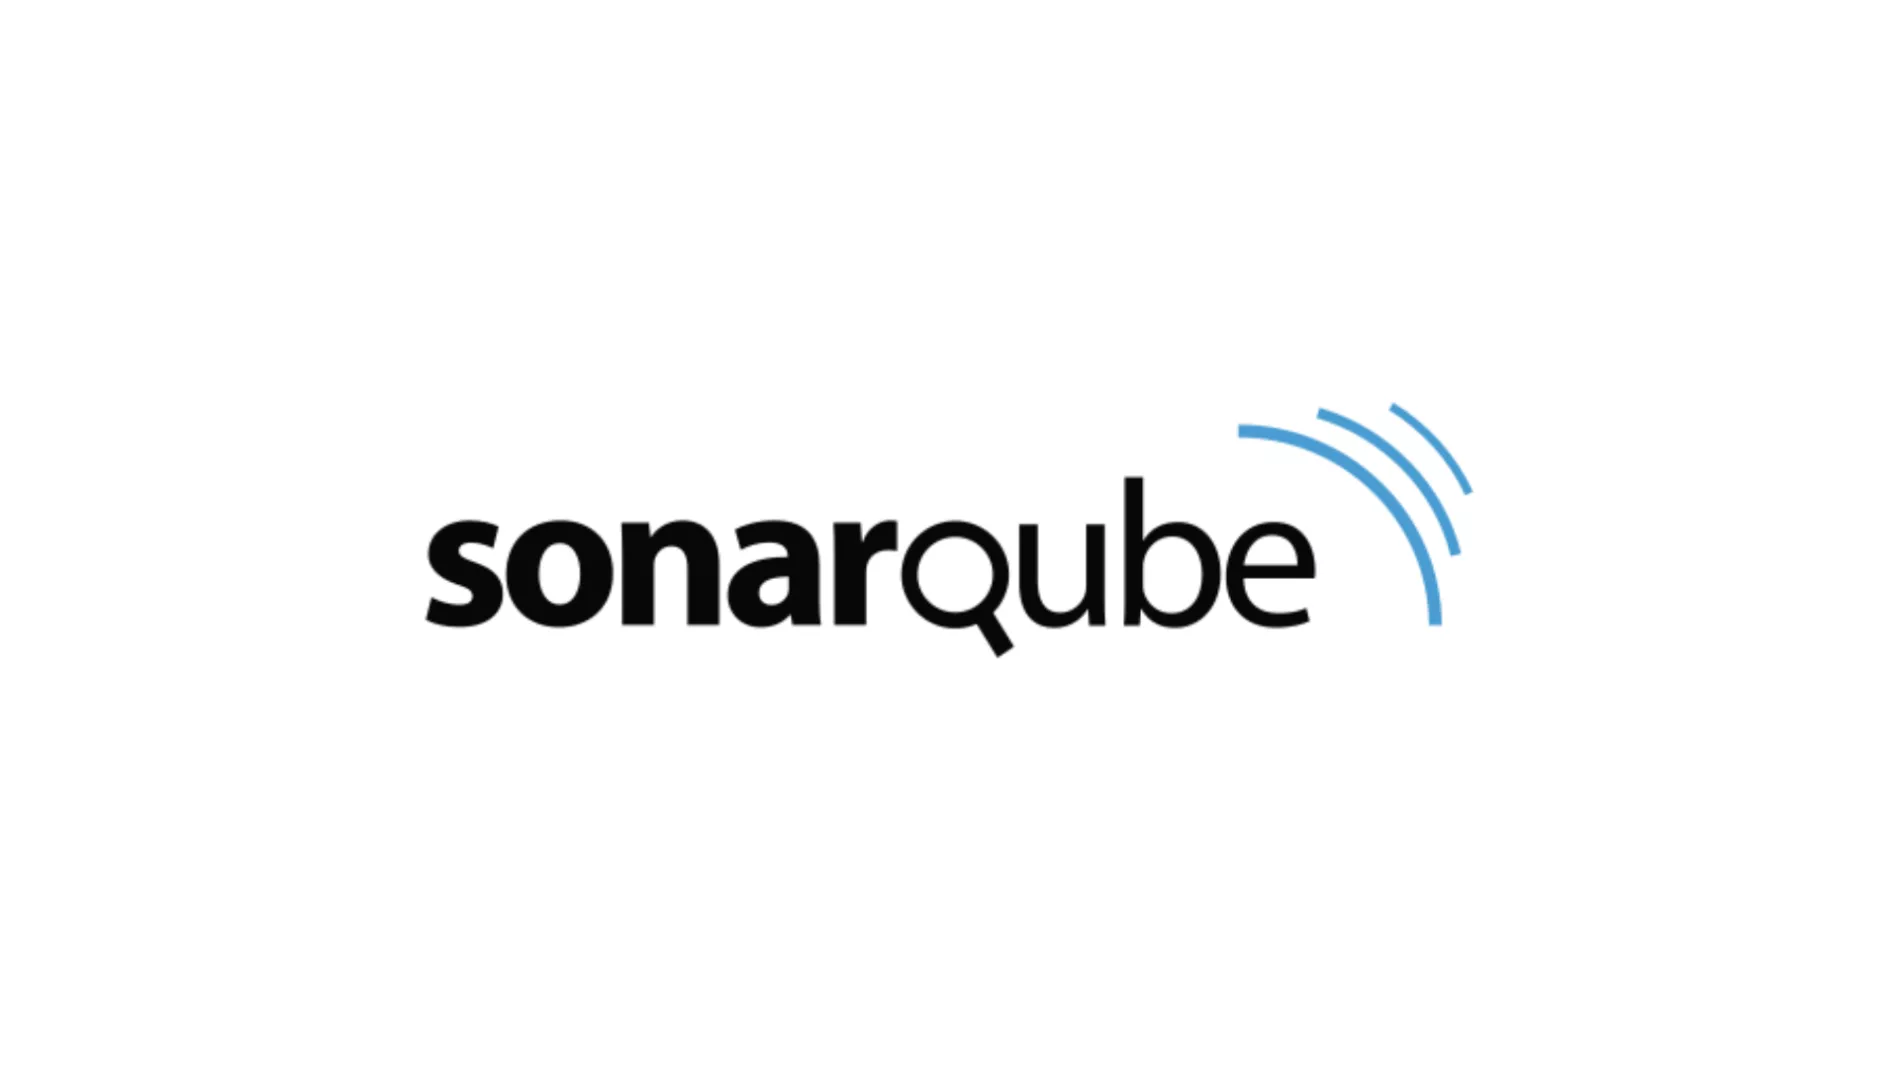 Security & Quality Source Code Review Menggunakan Sonarqube!